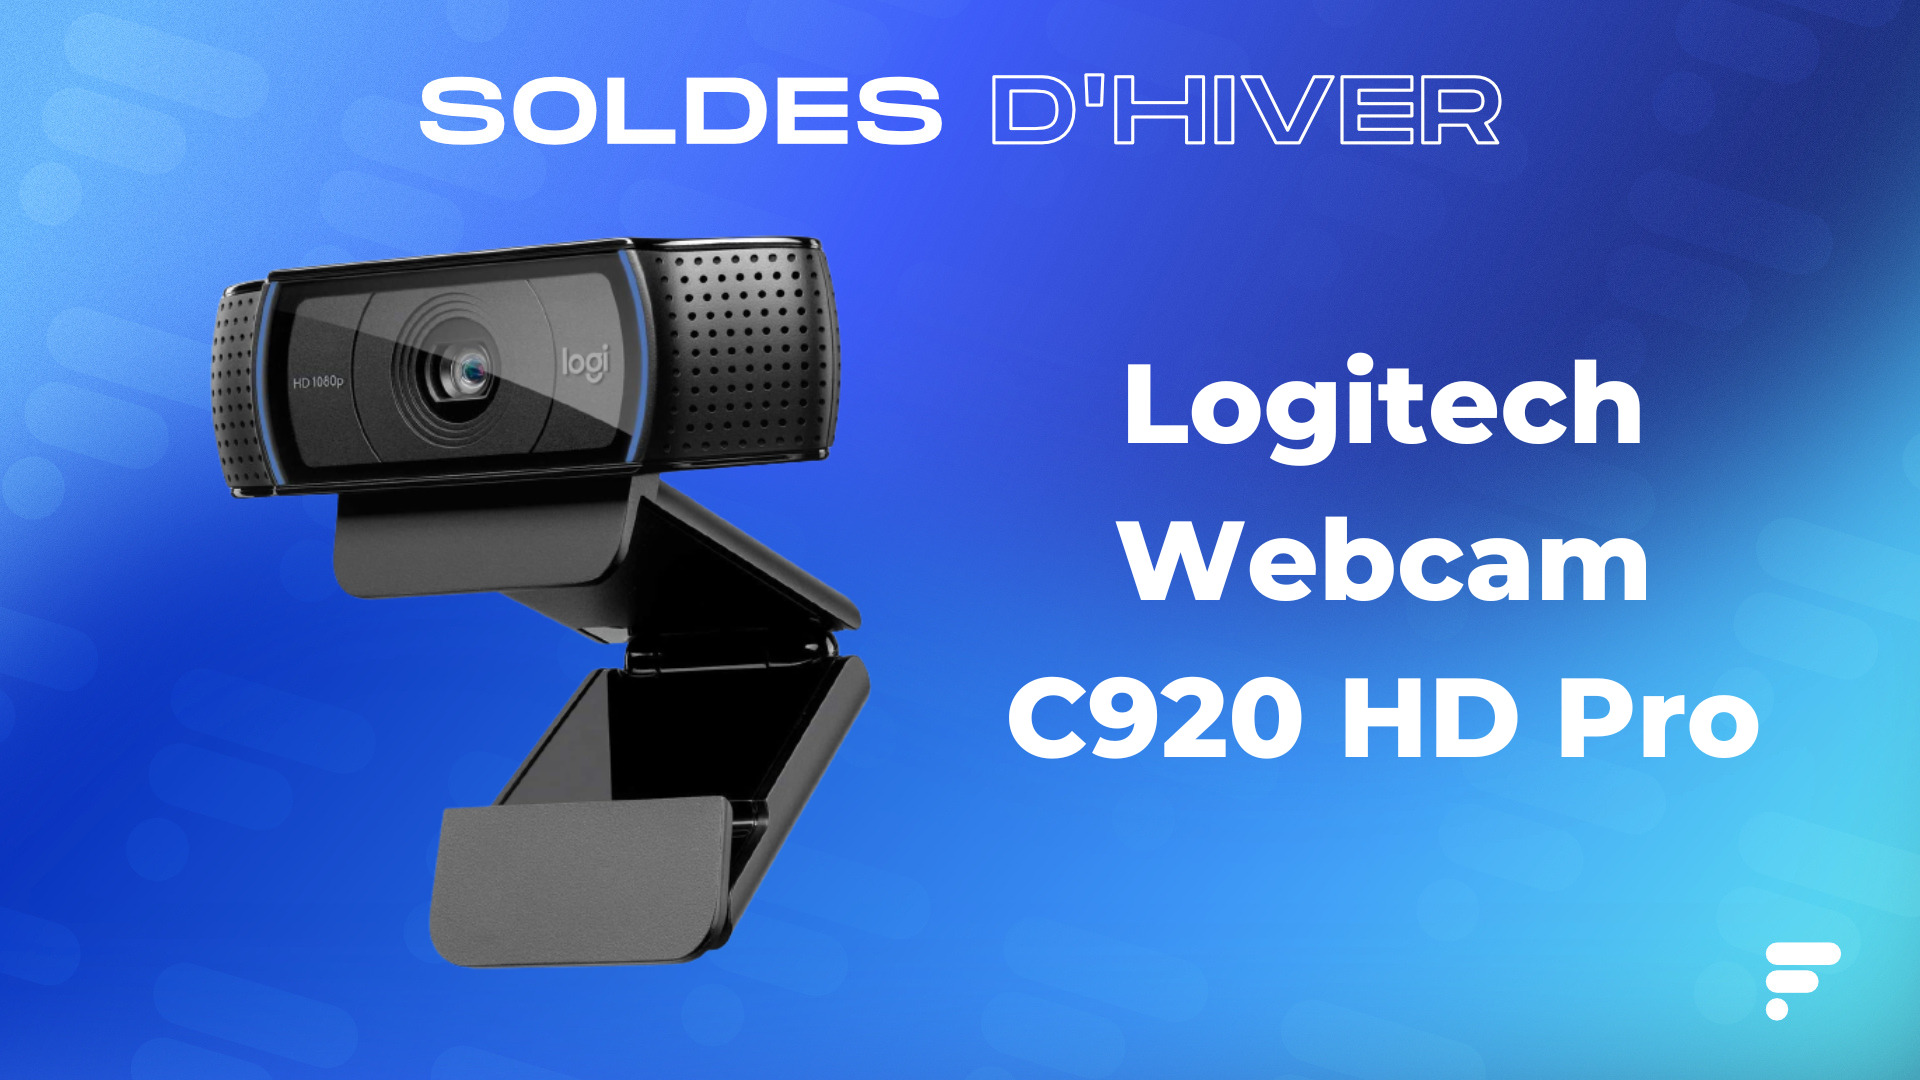 La Logitech Webcam C920 HD Pro a rarement été aussi bon marché que